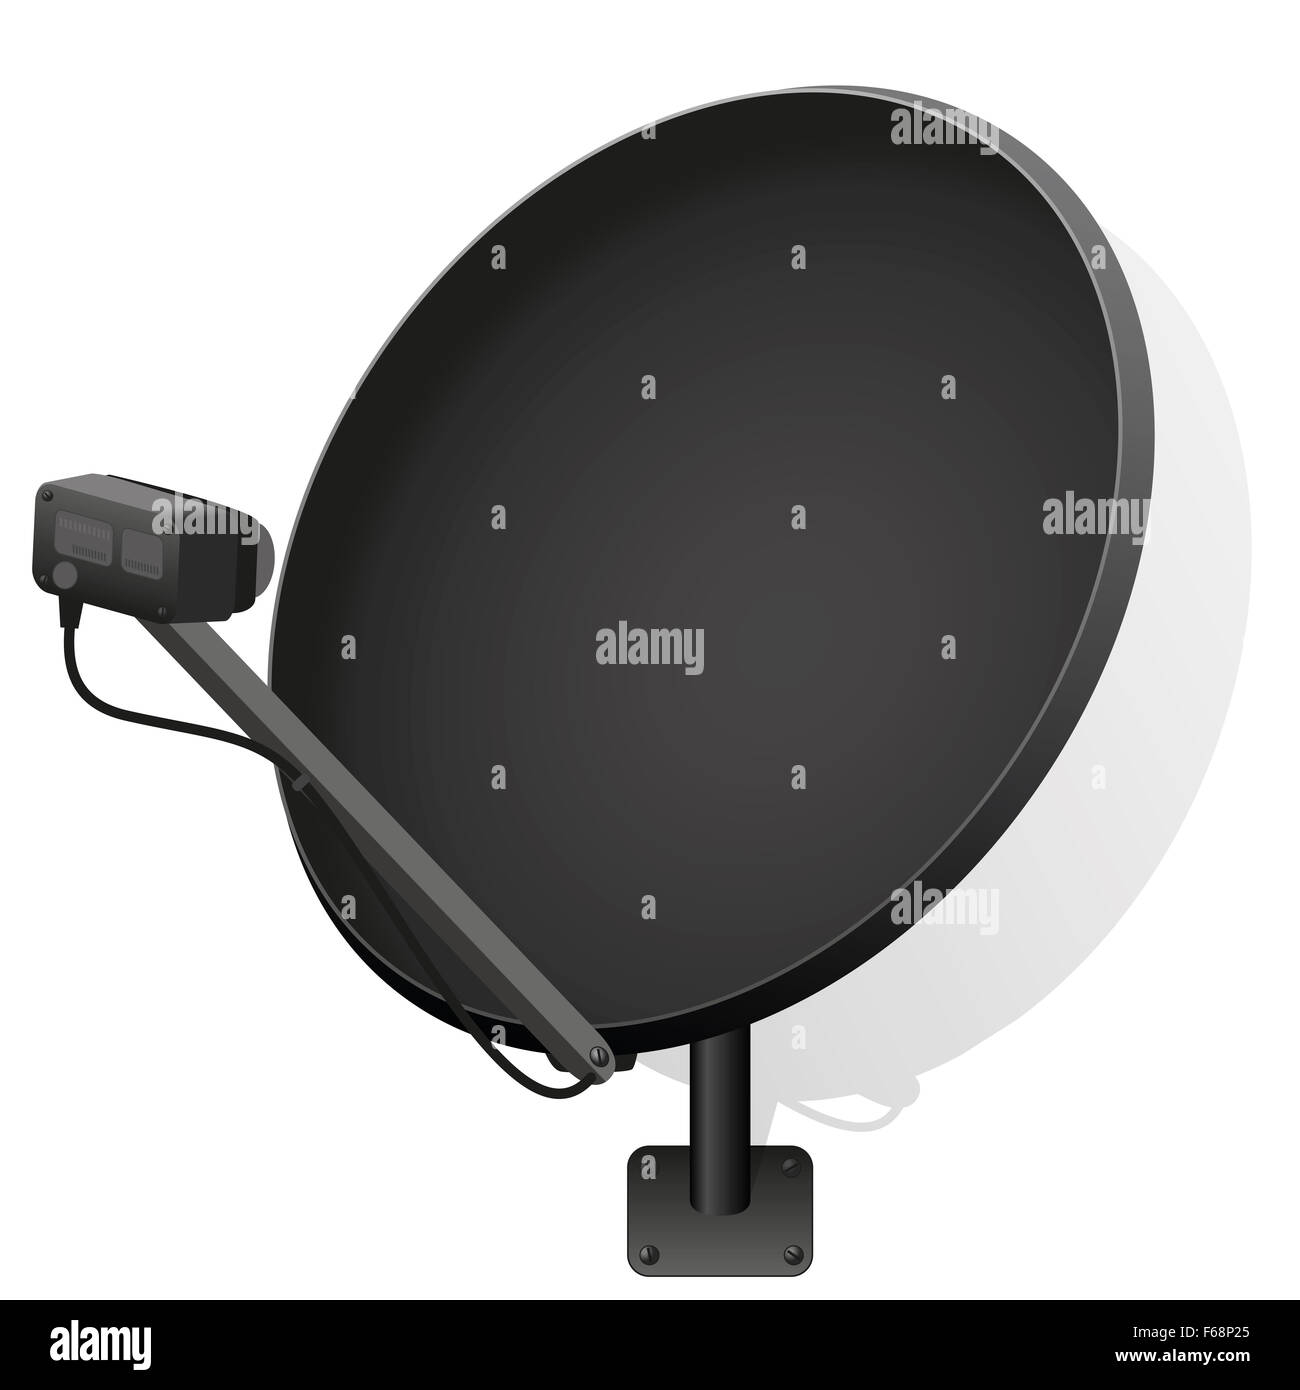 Antenne satellite noir pour recevoir des signaux de télévision, radio, internet. Illustration sur fond blanc. Banque D'Images